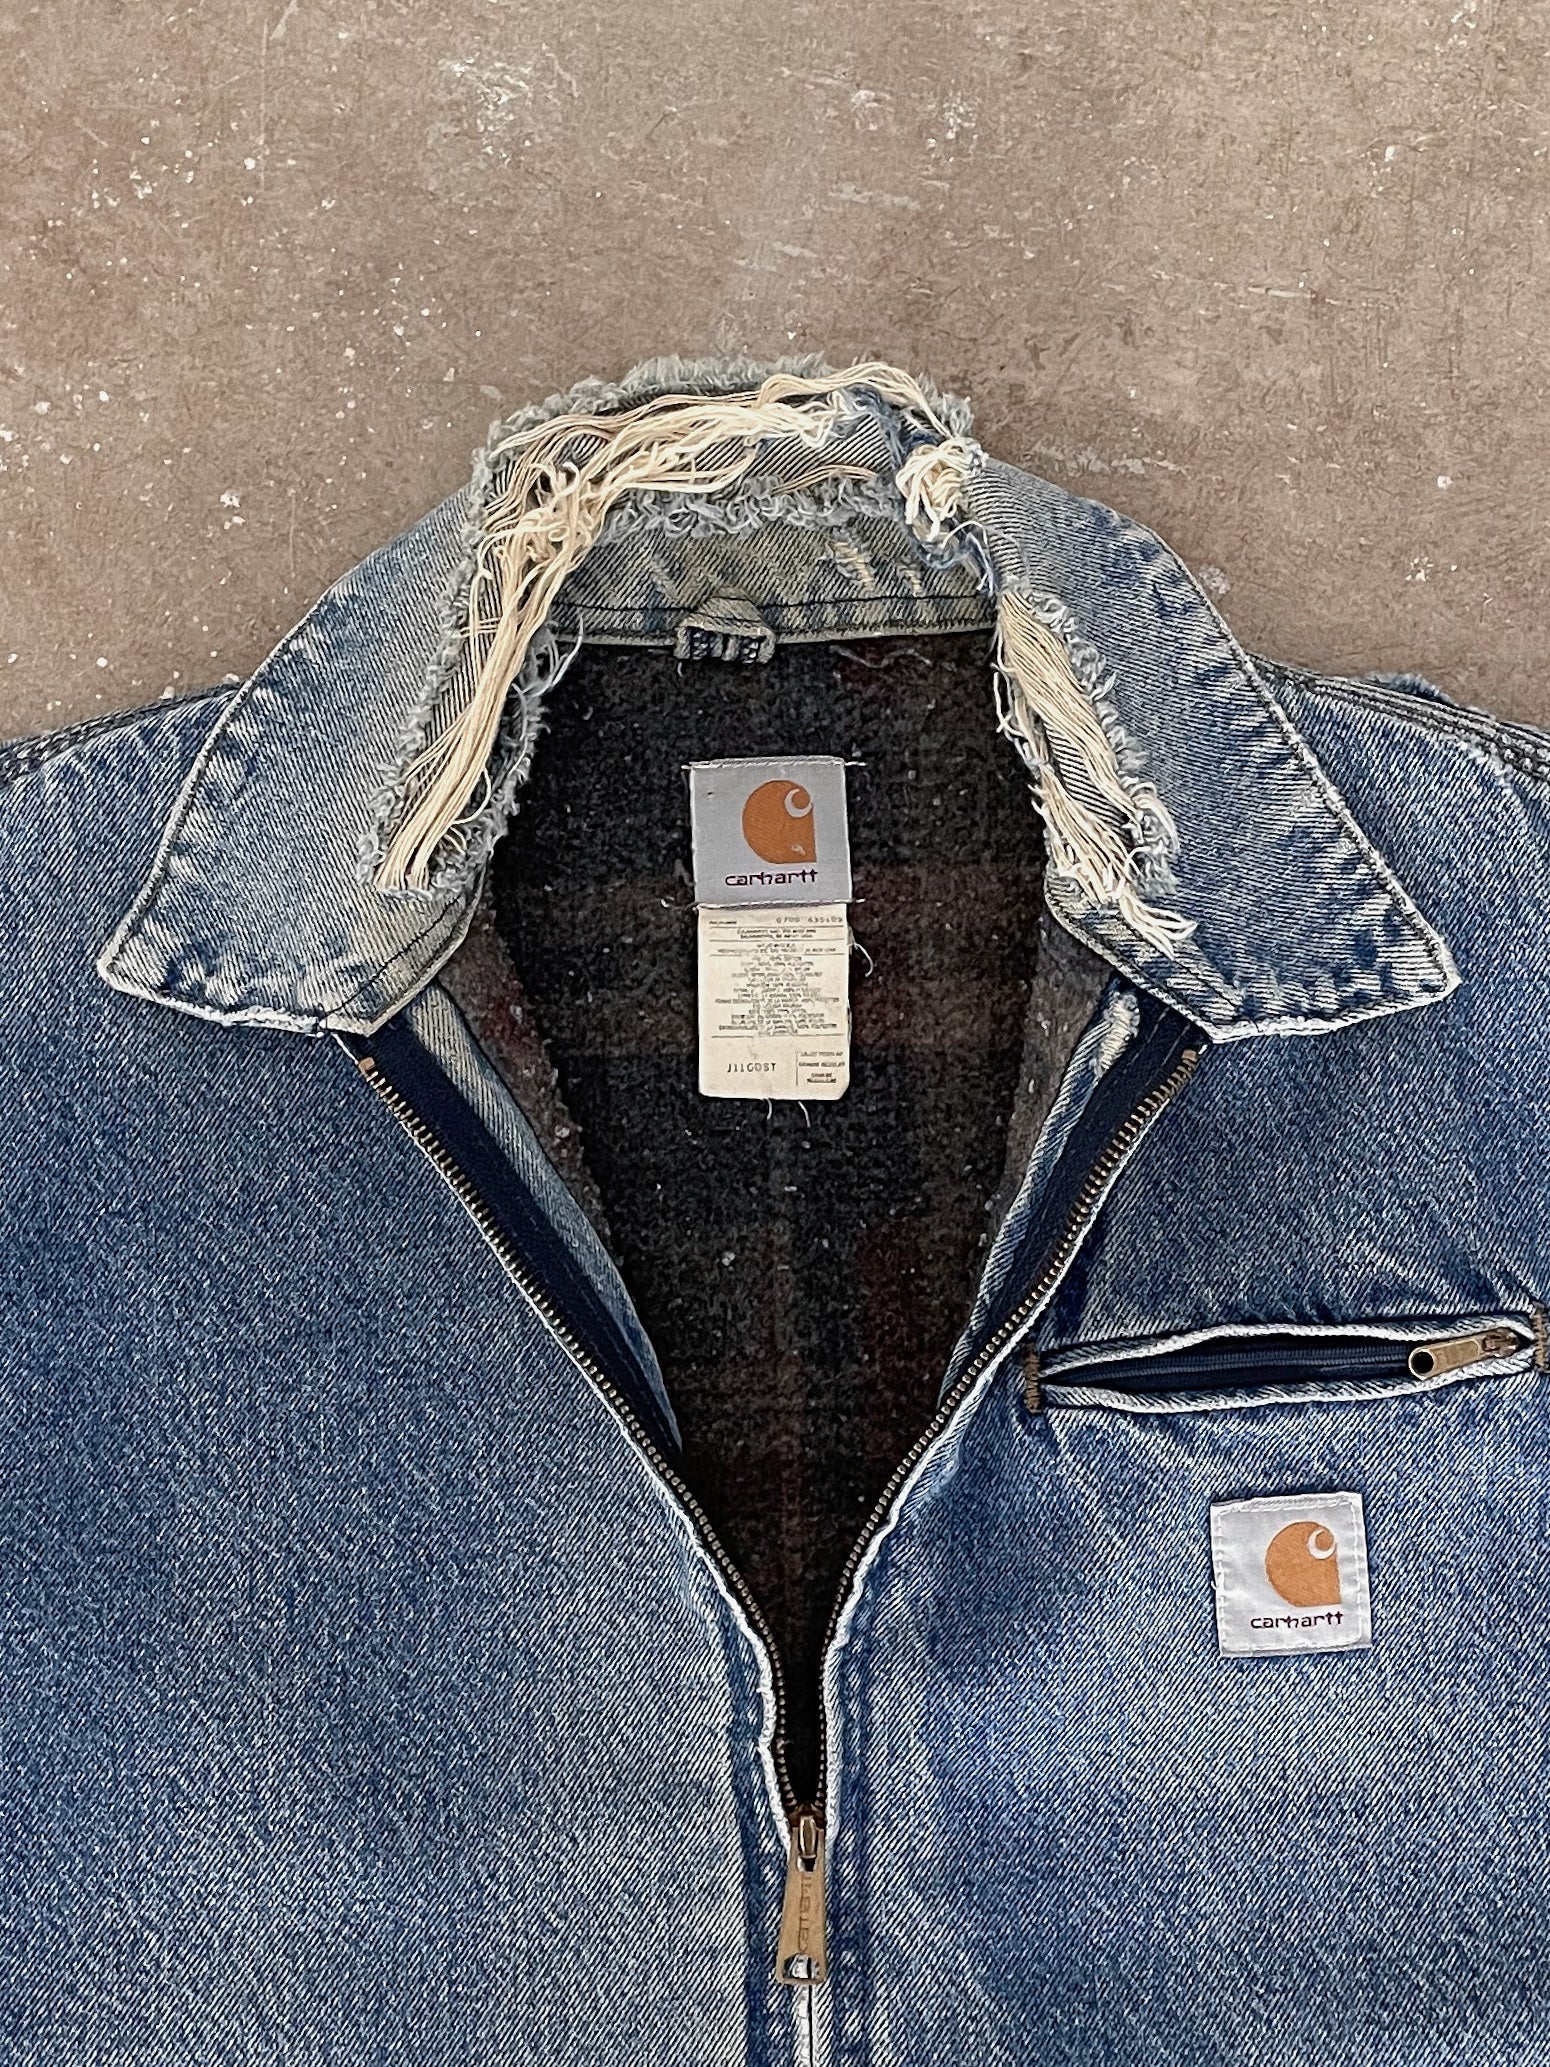 Carhartt Distressed Faded Blue Denim Lined Work Jacket (L)